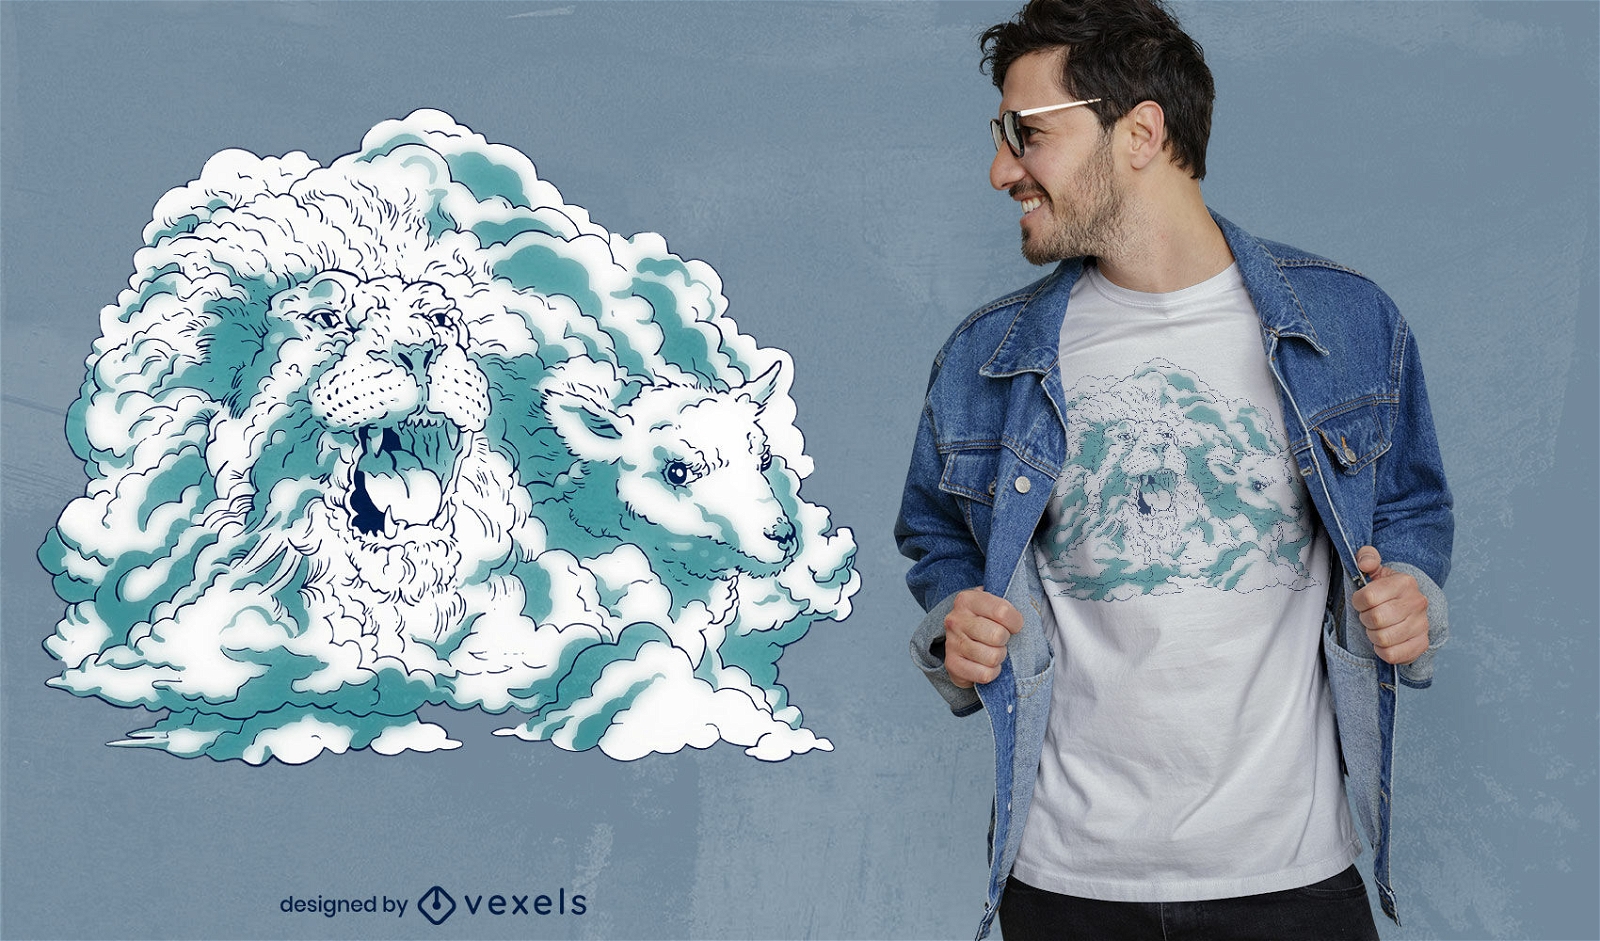 Löwen- und Lammwolken-T-Shirt-Design